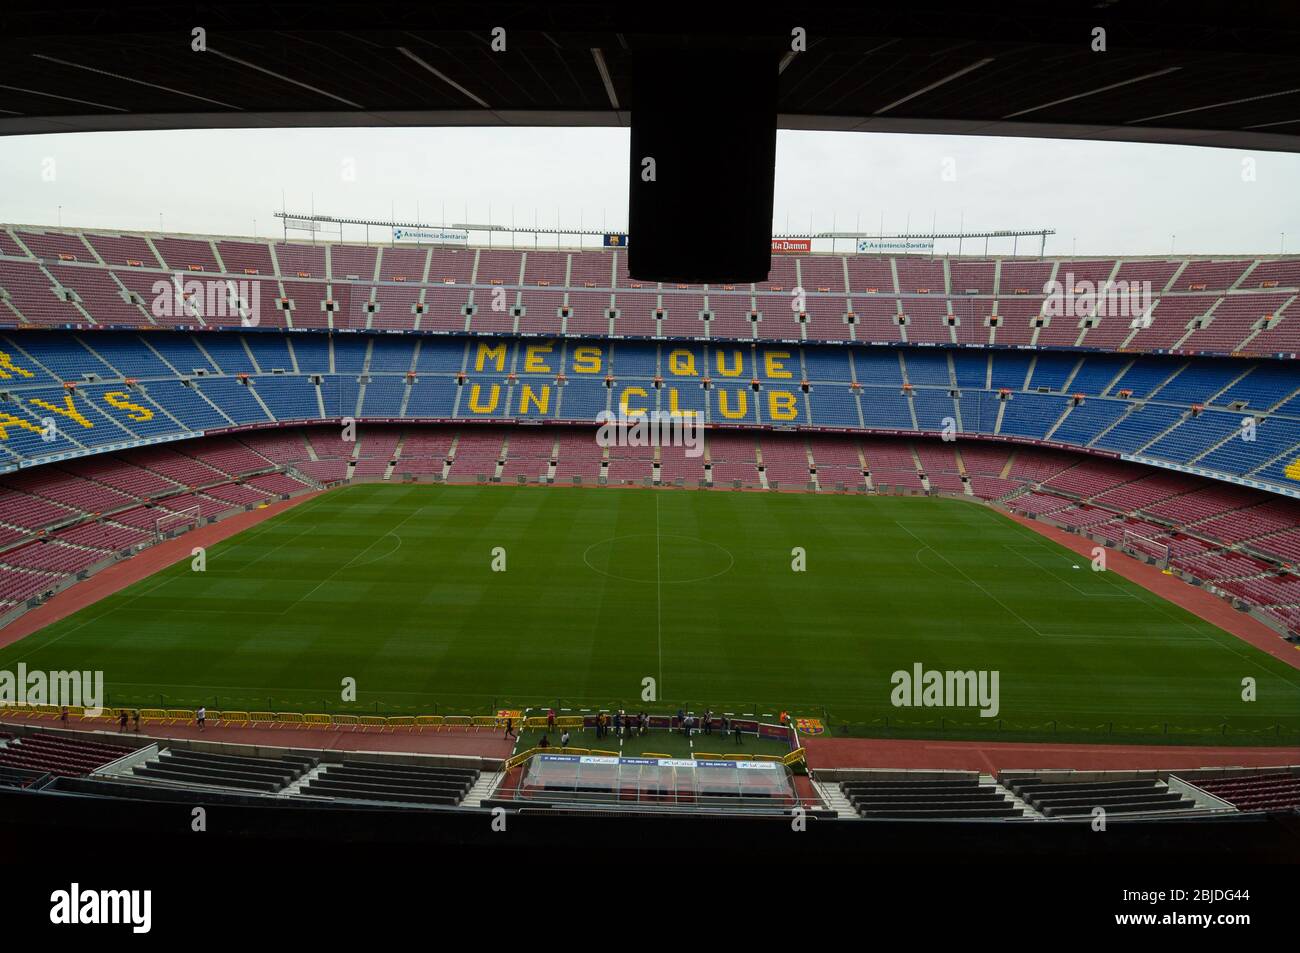 Barcellona, Spagna - 22 Settembre 2014: Nou Camp è il più grande stadio in Europa e la seconda più grande associazione allo stadio di calcio del mondo. Barce Foto Stock